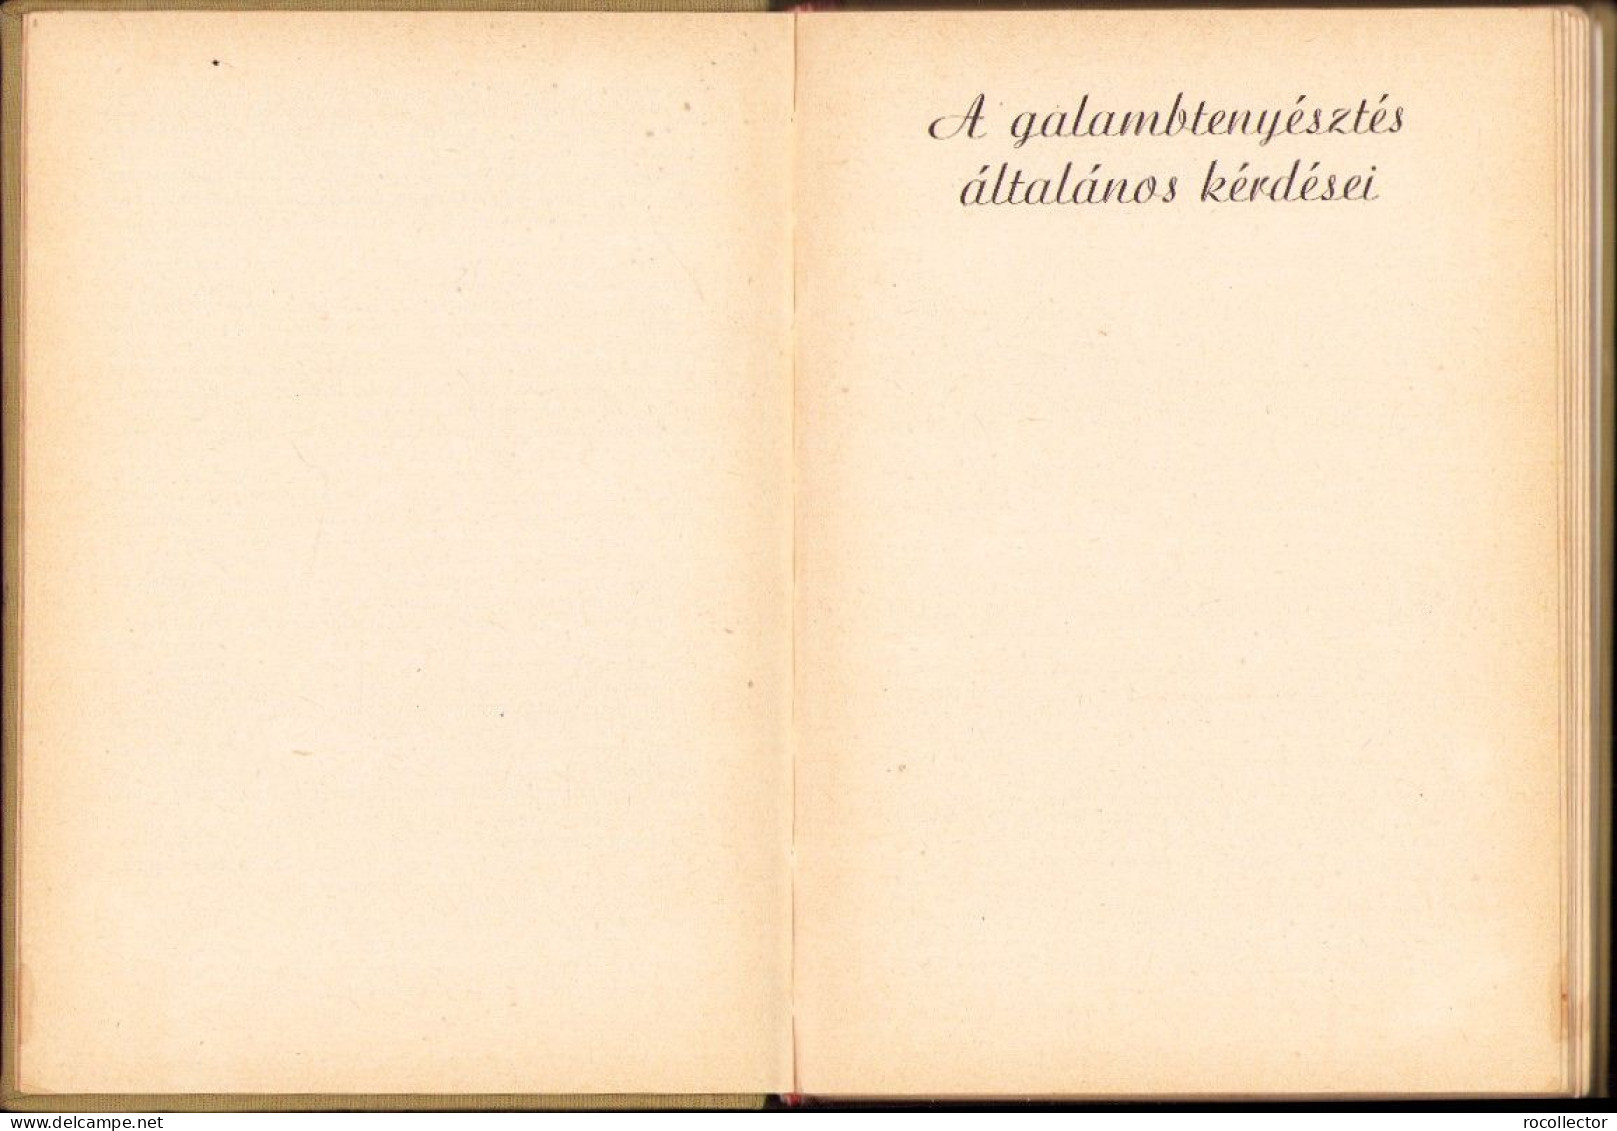 A Galambtenyésztésről, Cikkgyűtemény (1928-1960), Bangó Ferenc, 1964 C4365N - Livres Anciens